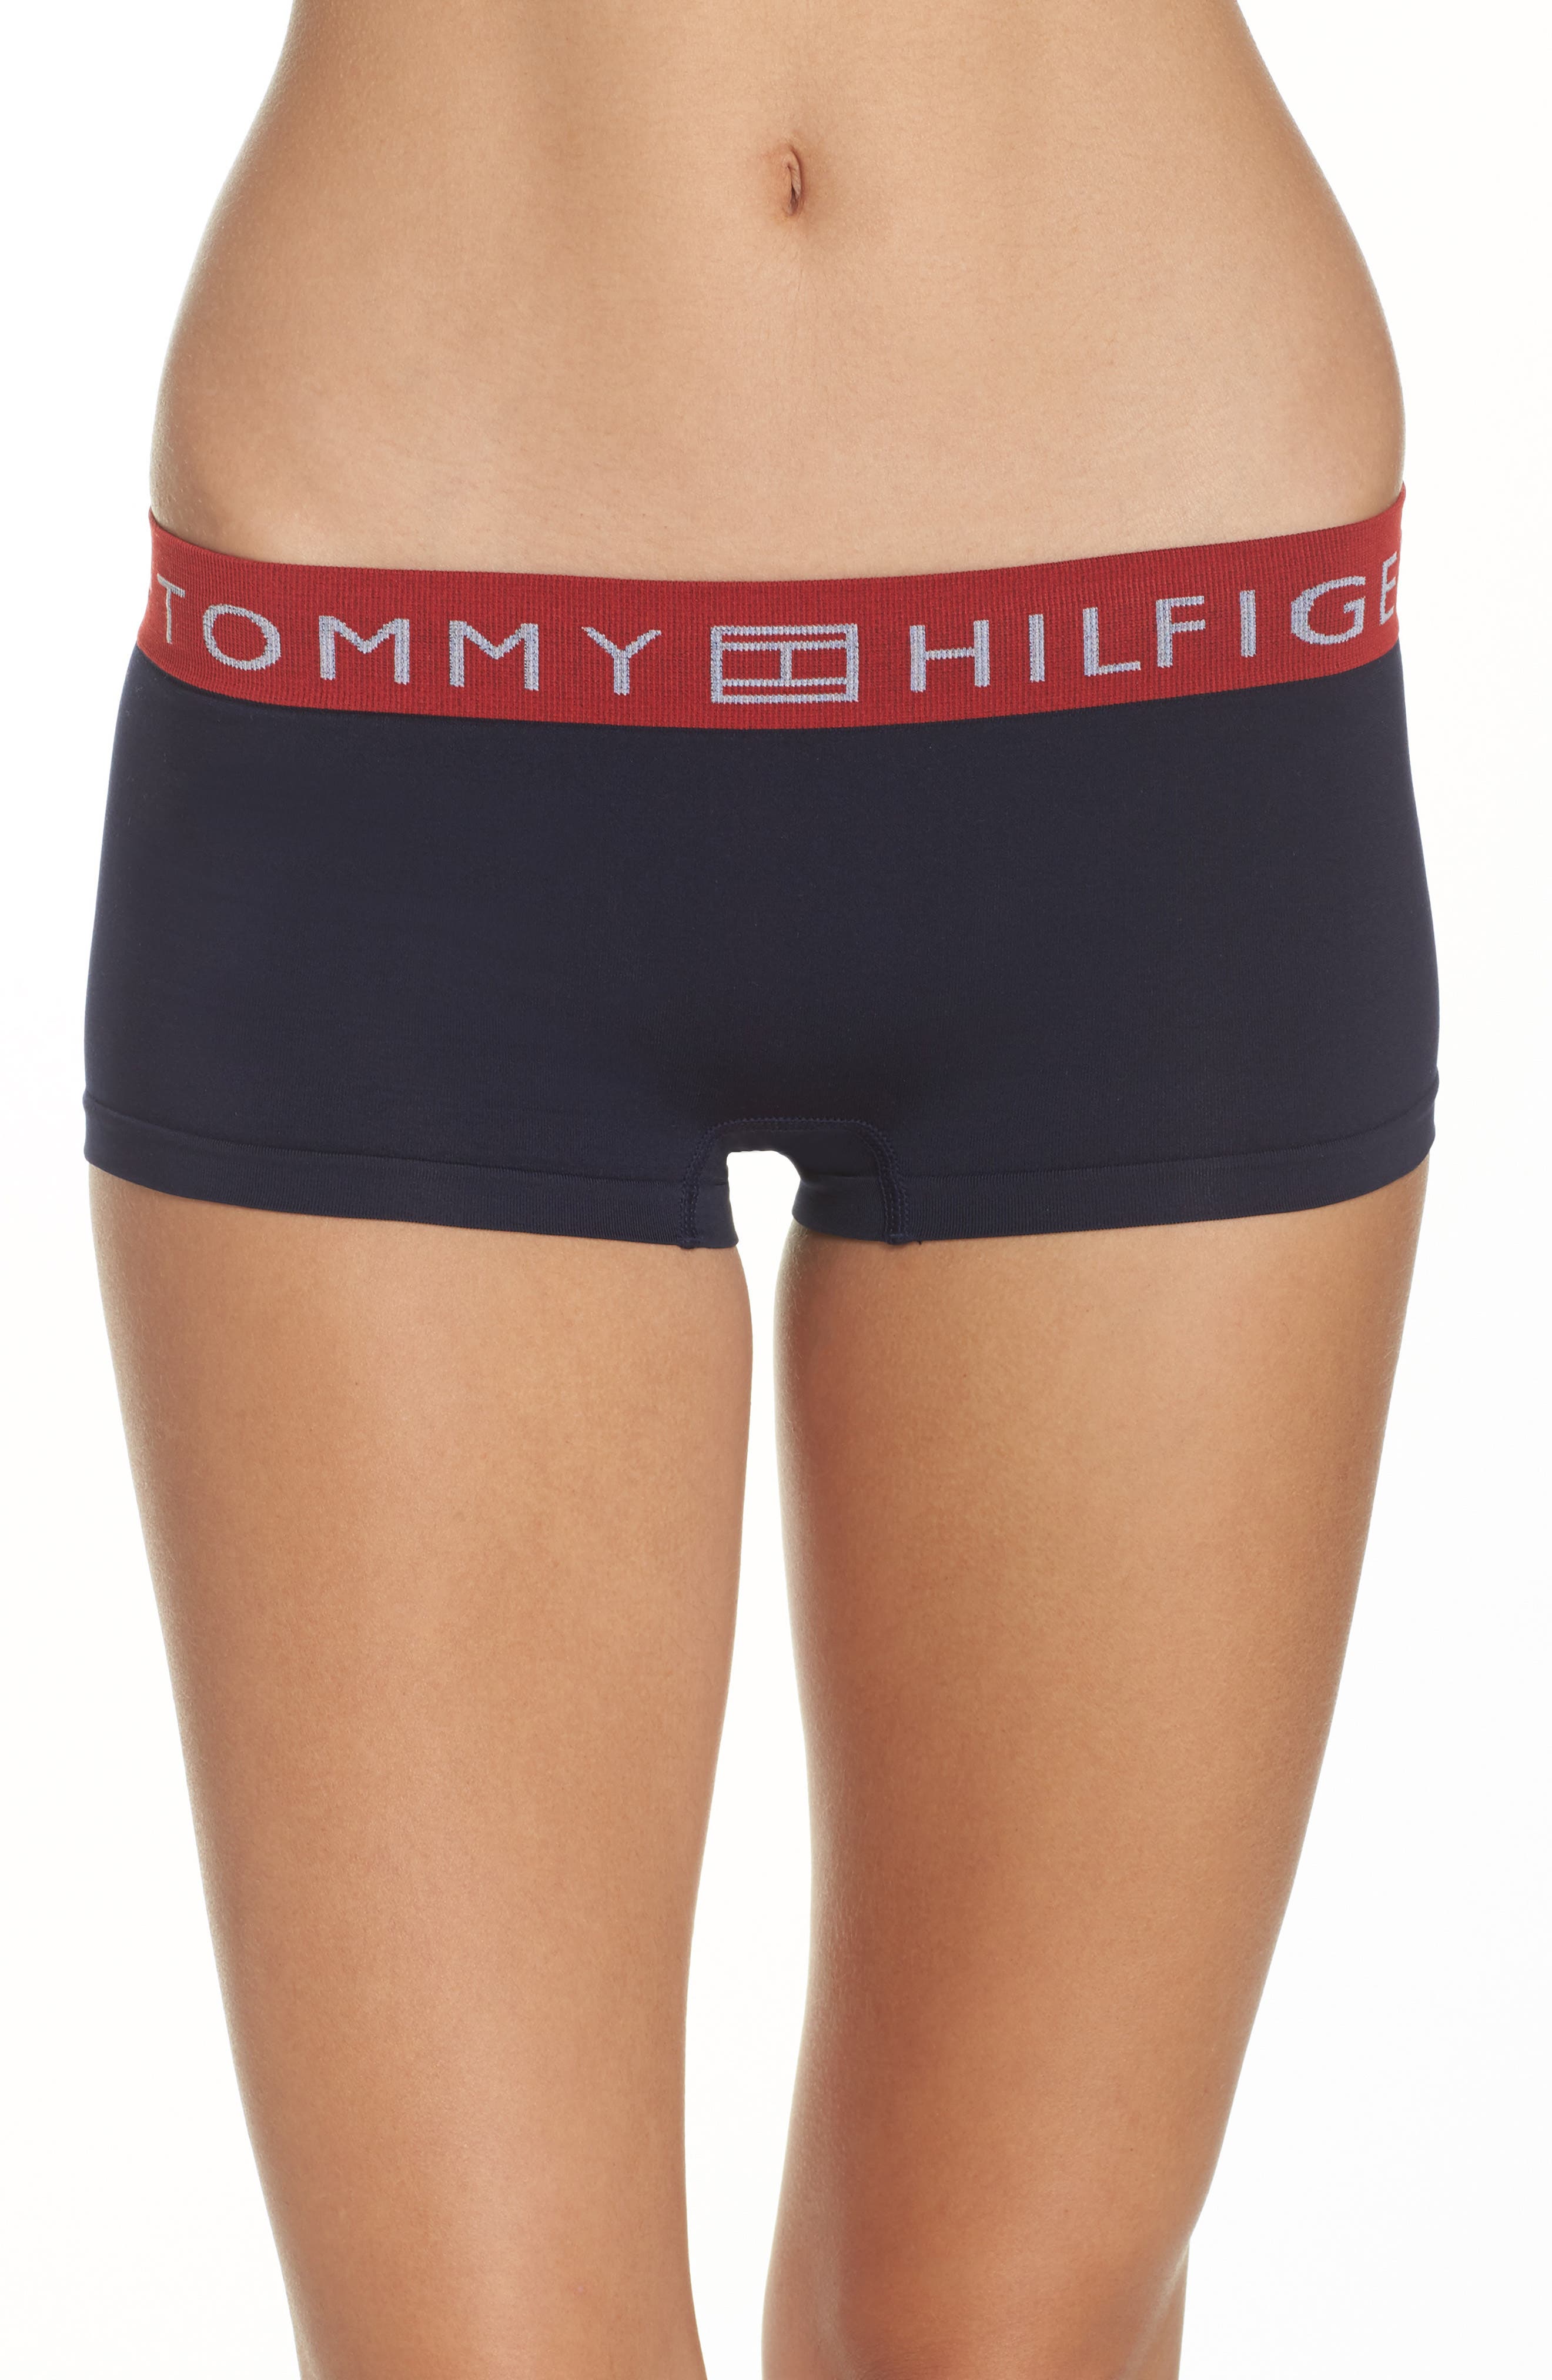 tommy hilfiger boy shorts underwear